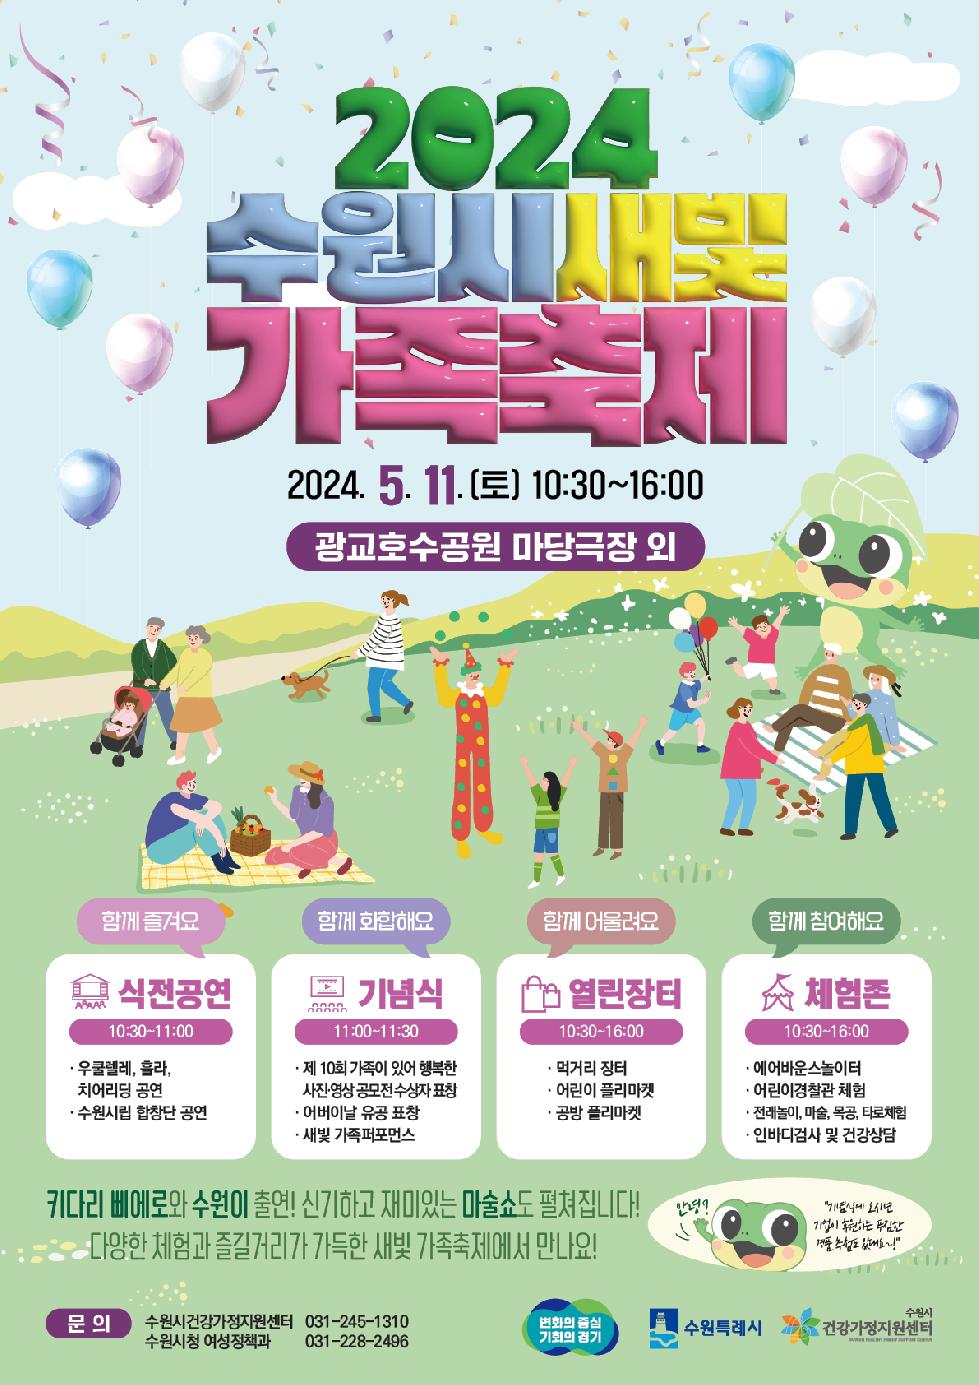 수원시 가족이 함께하는‘2024 수원시새빛가족축제, 5월 11일 광교호수